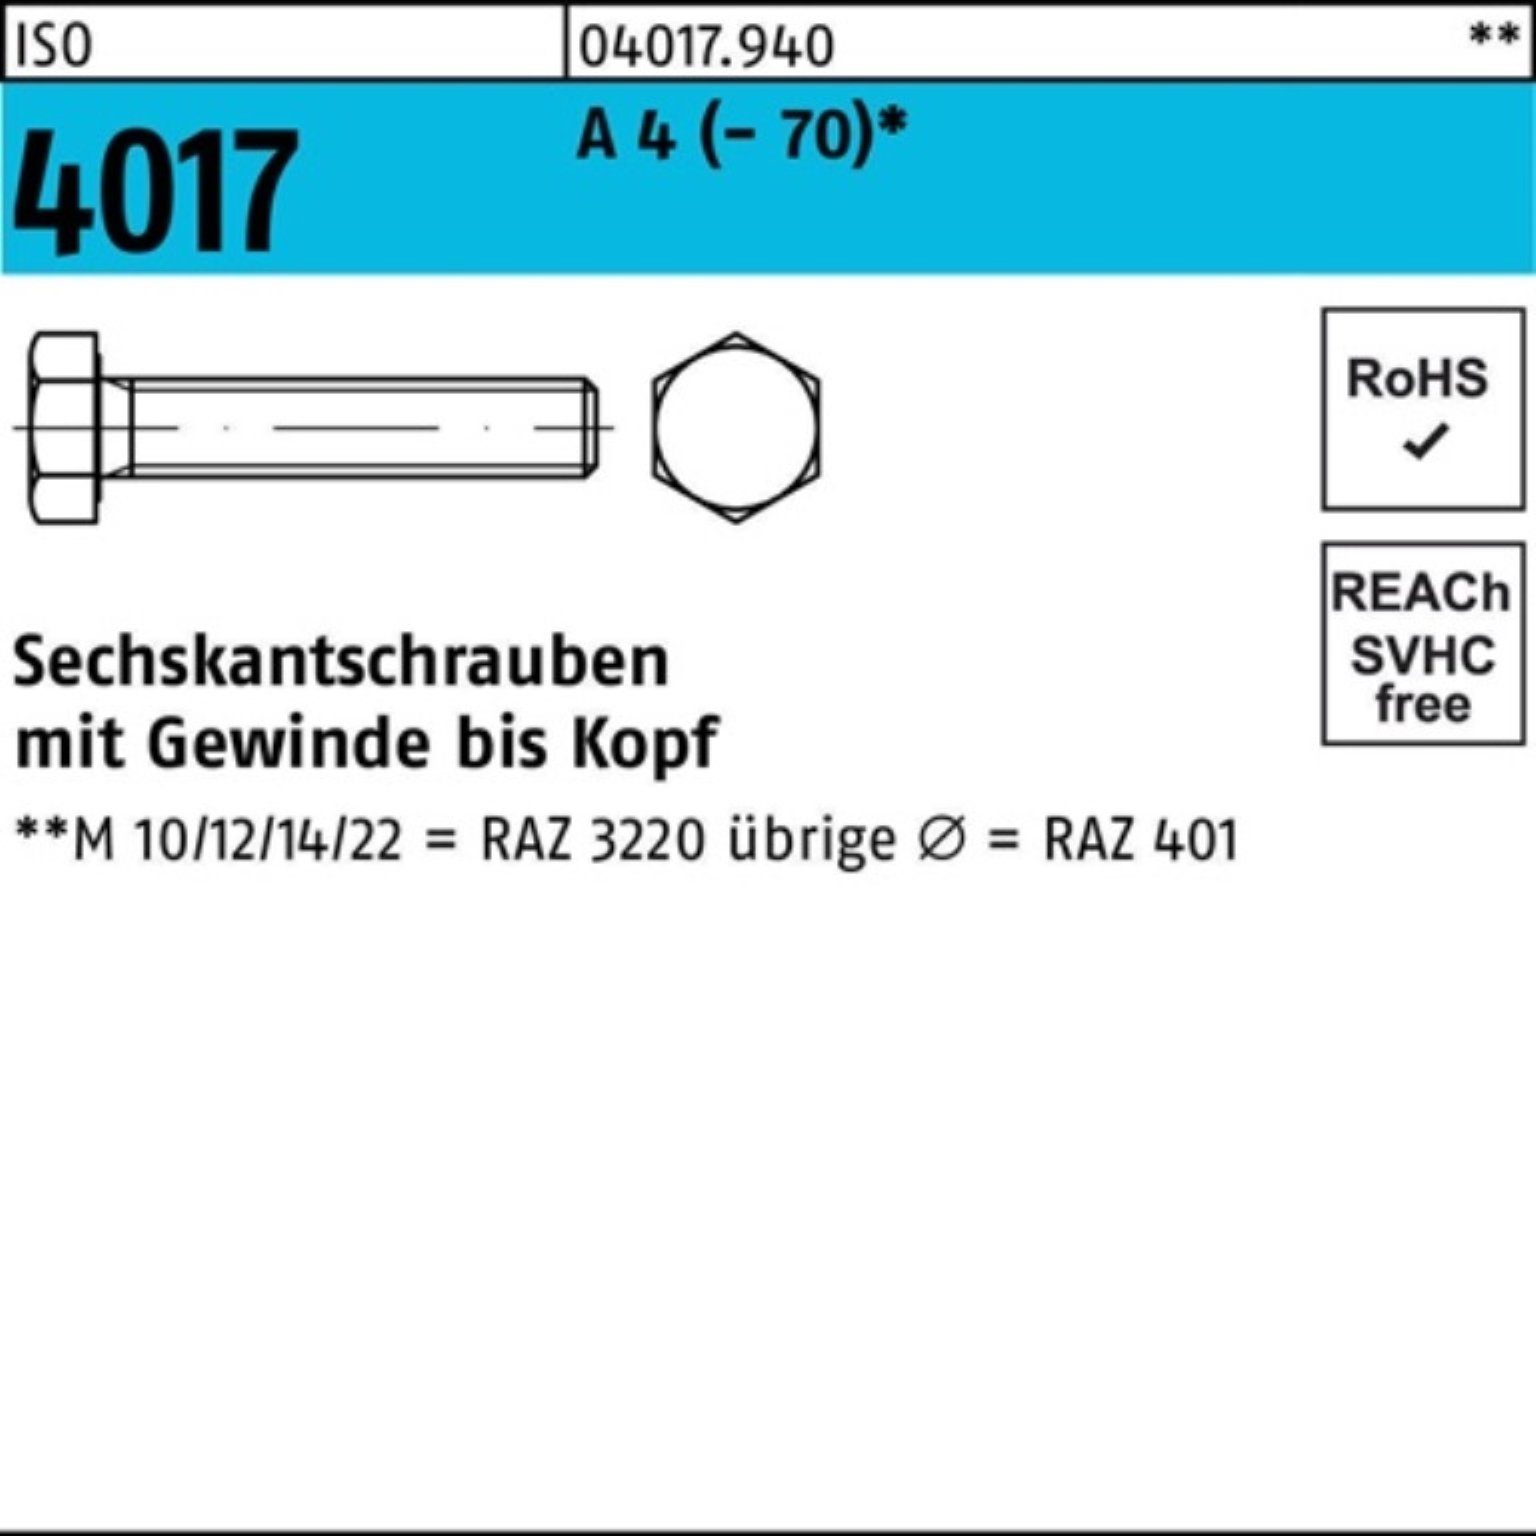 Bufab Sechskantschraube 100er Pack Sechskantschraube ISO 4017 VG M18x 150 A 4 (70) 1 Stück